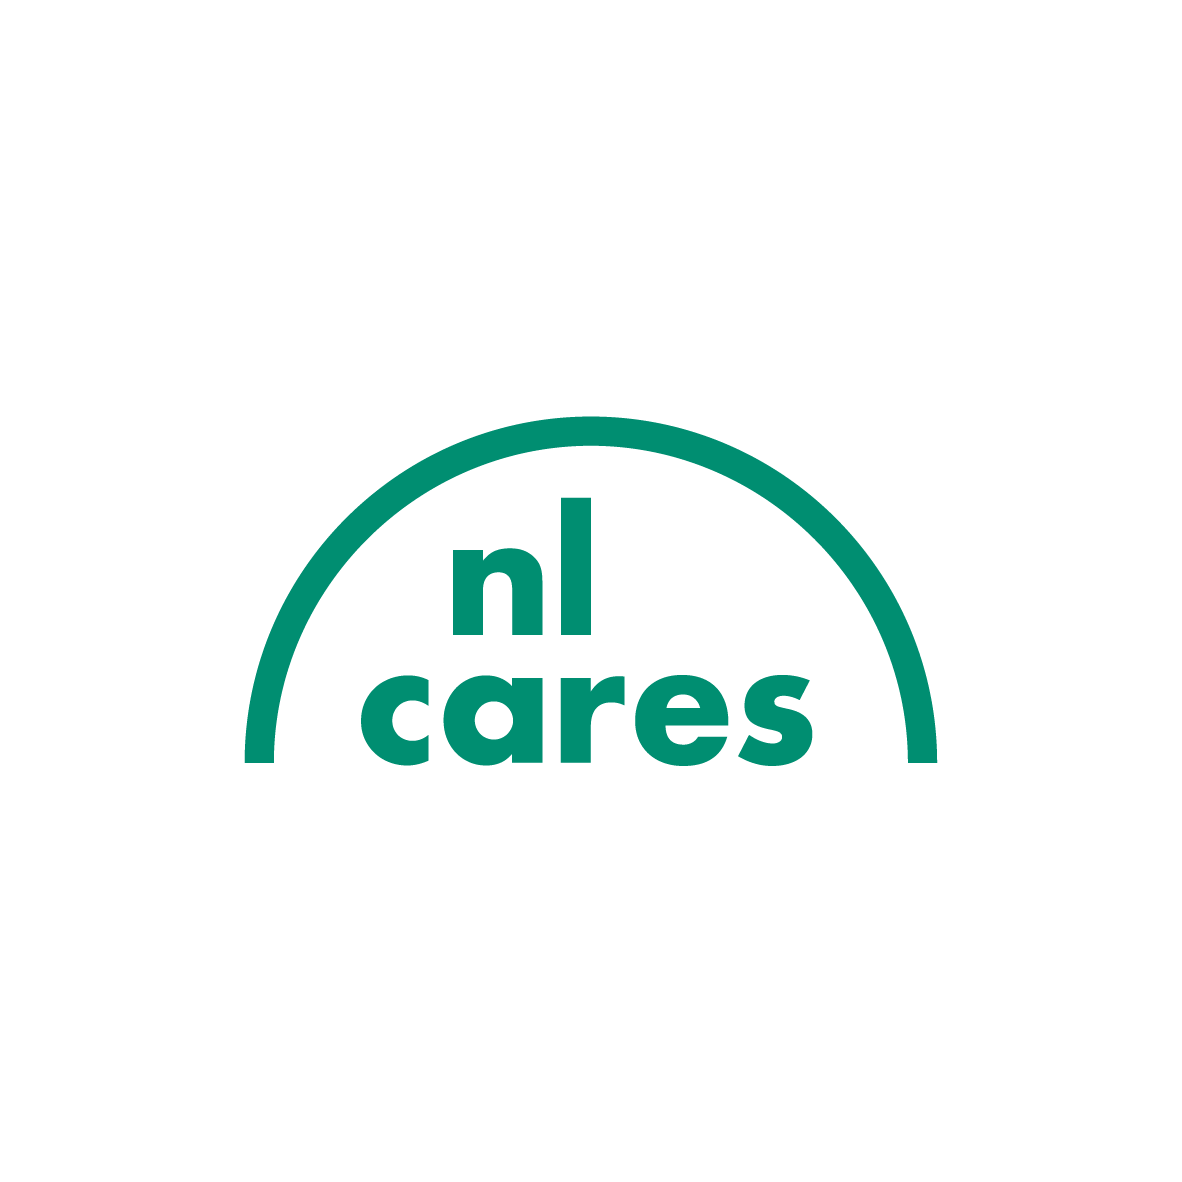 NL Cares